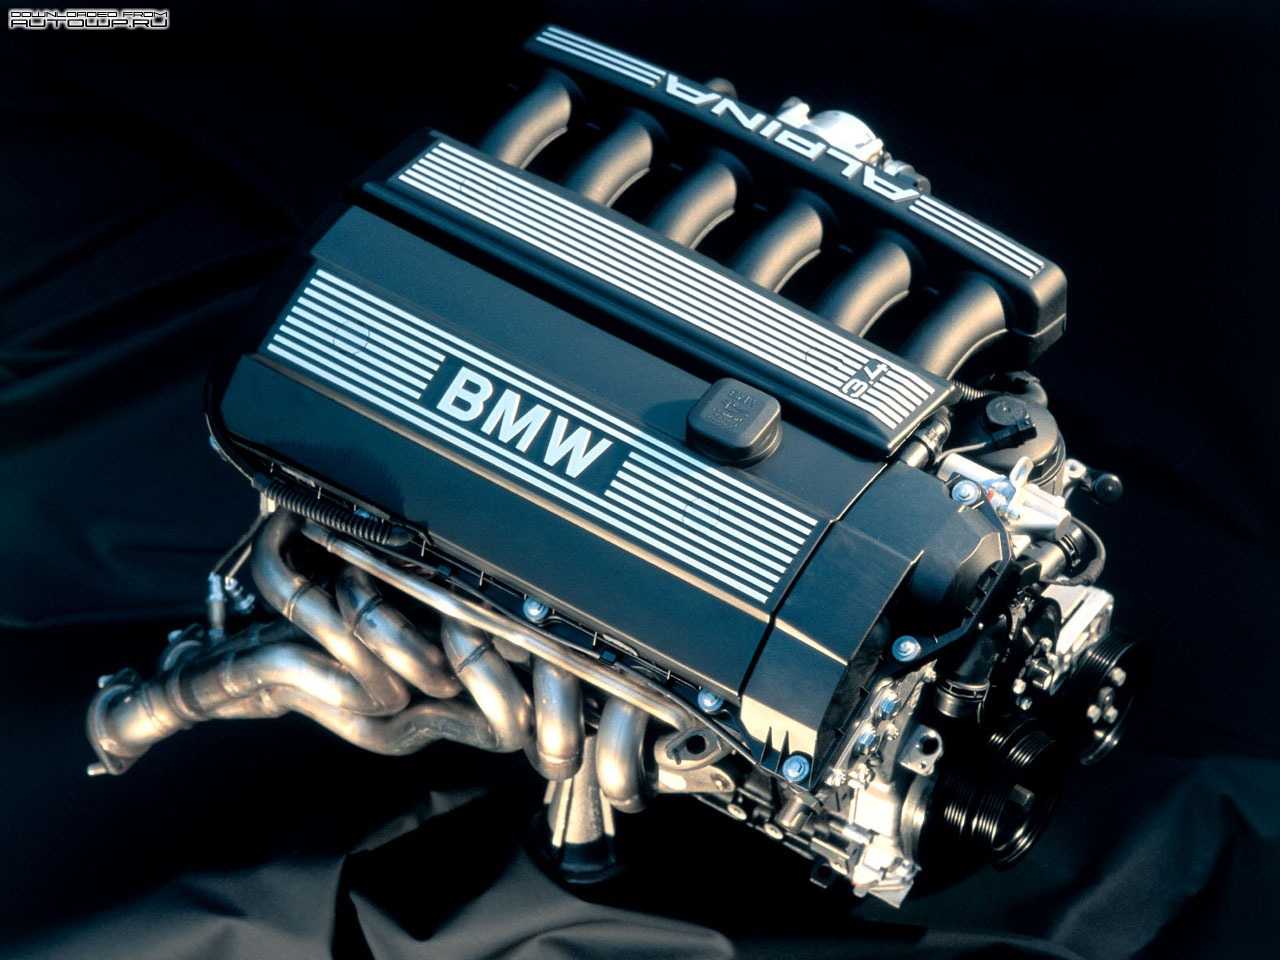 Bmw m 54. BMW m52 b30. BMW m52 двигатель. BMW m52 2.5. М52 двигатель БМВ.